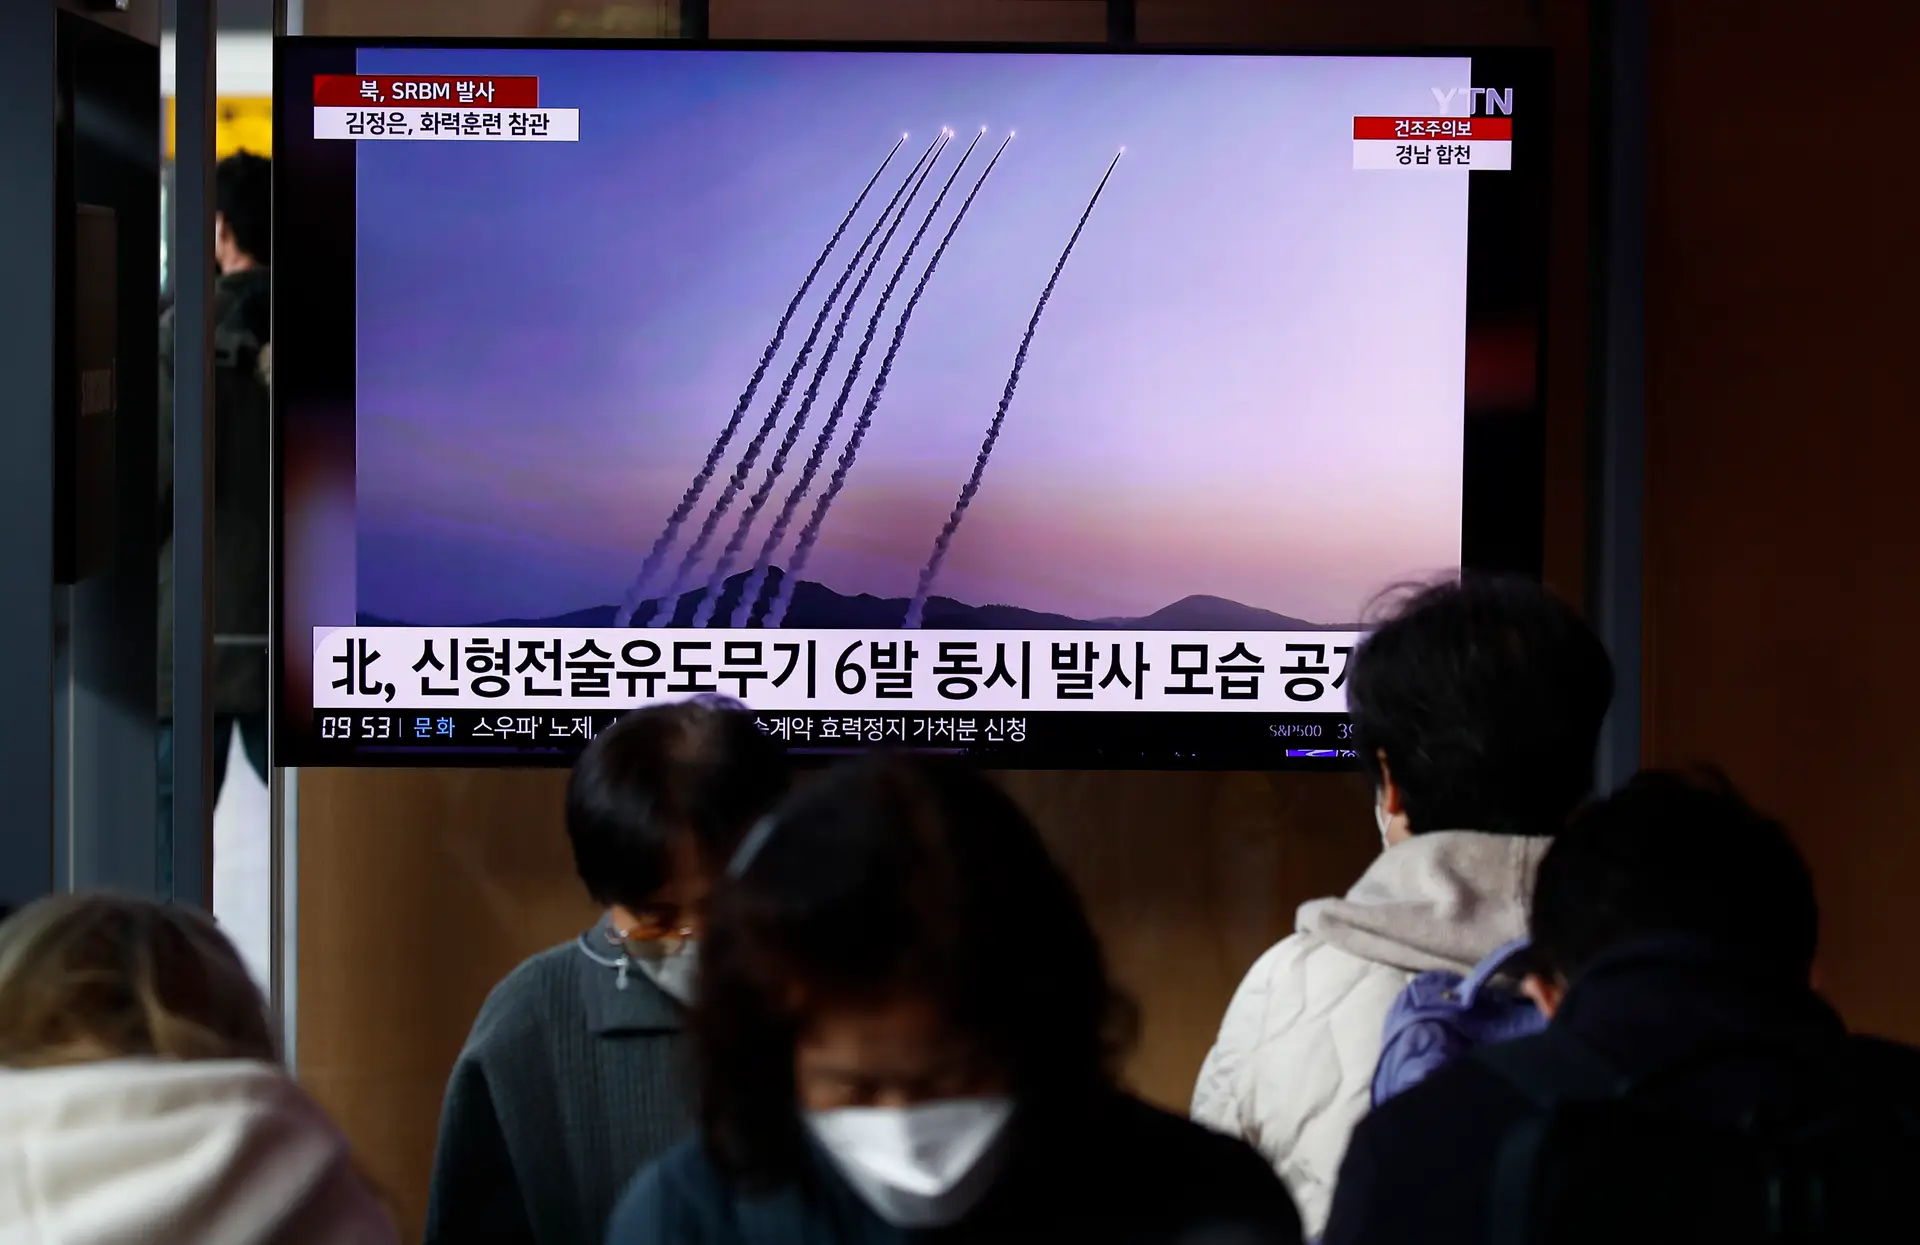 Coreia do Norte lançou "novo tipo" de míssil que usa combustível sólido